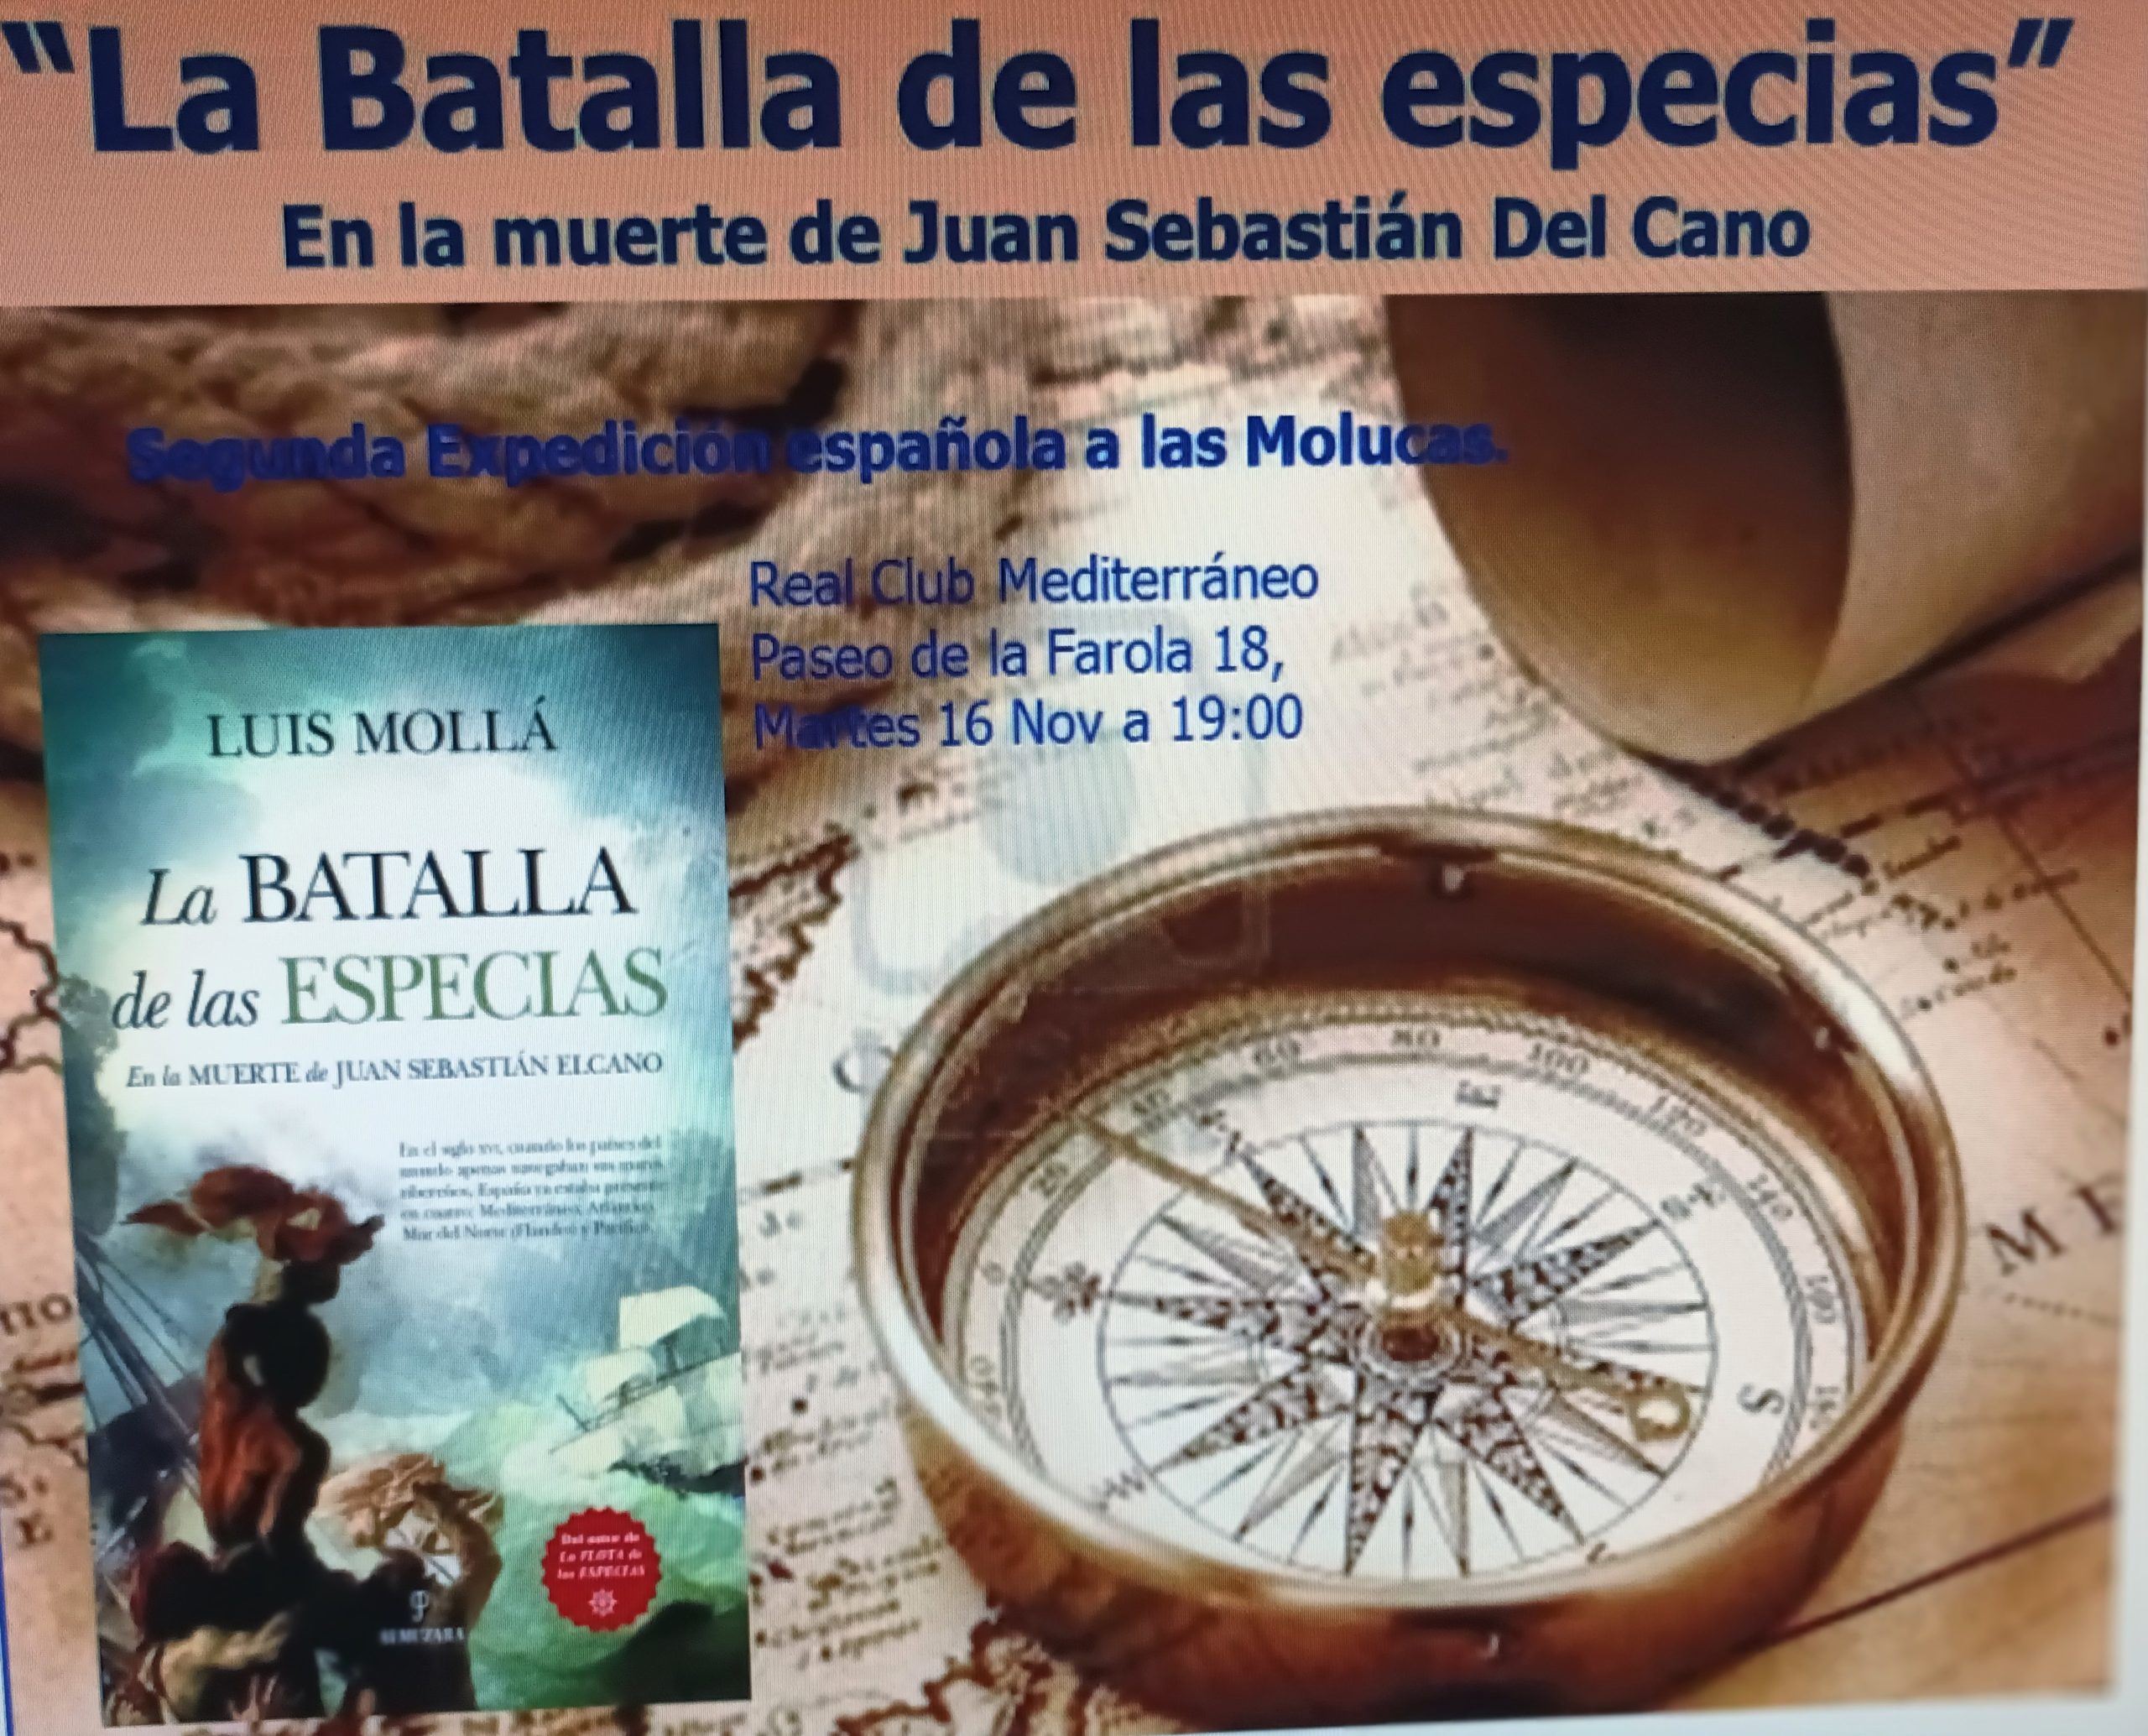 16 de noviembre. Malaga. Presentación libro: "La Batalla de las Especias"